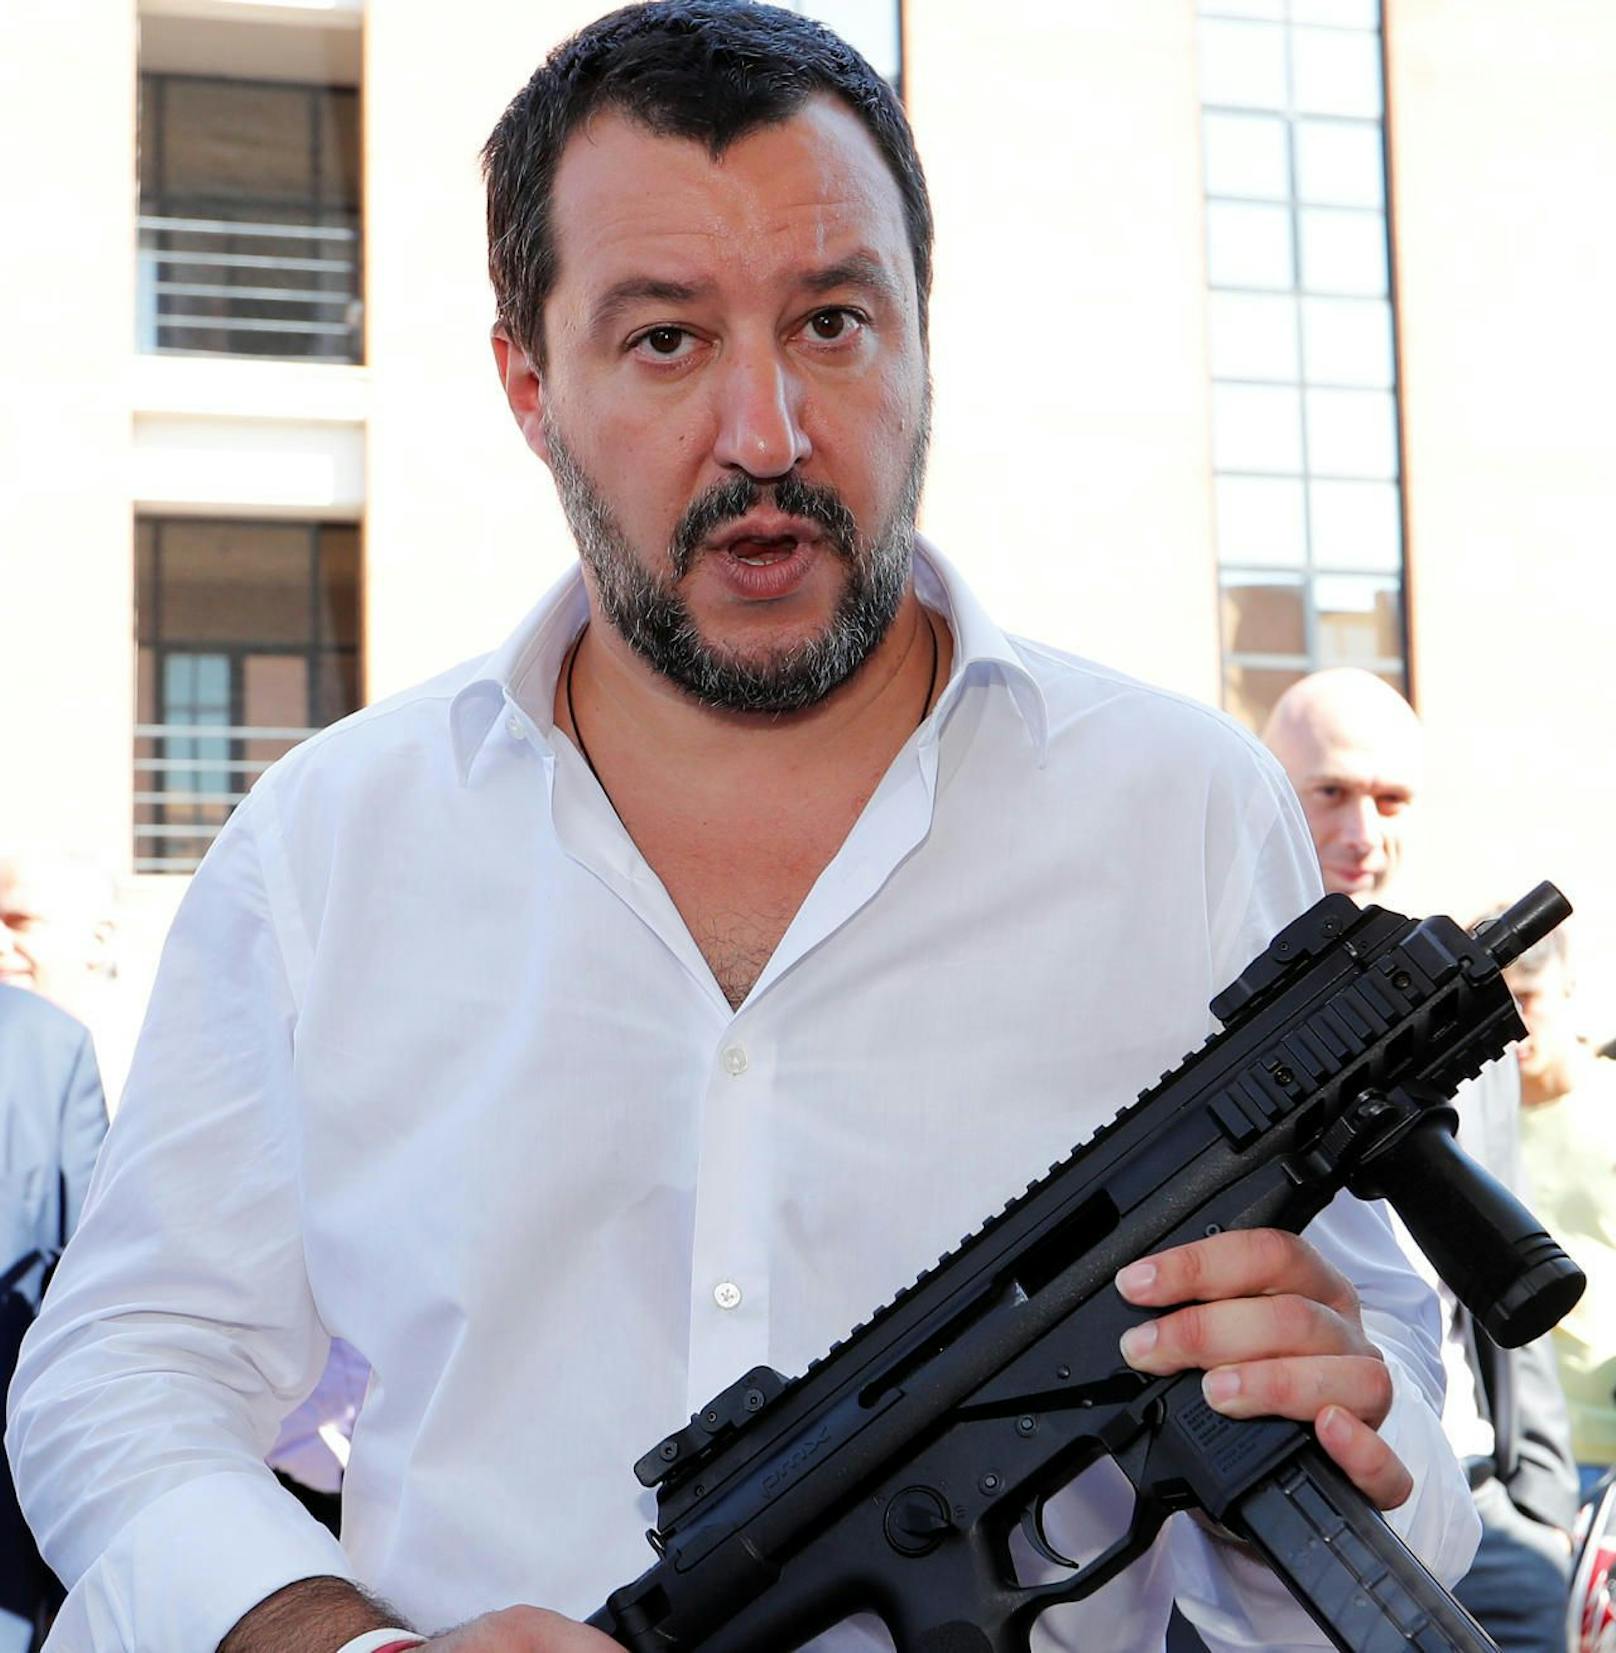 Salvini mit dem Gewehr.
